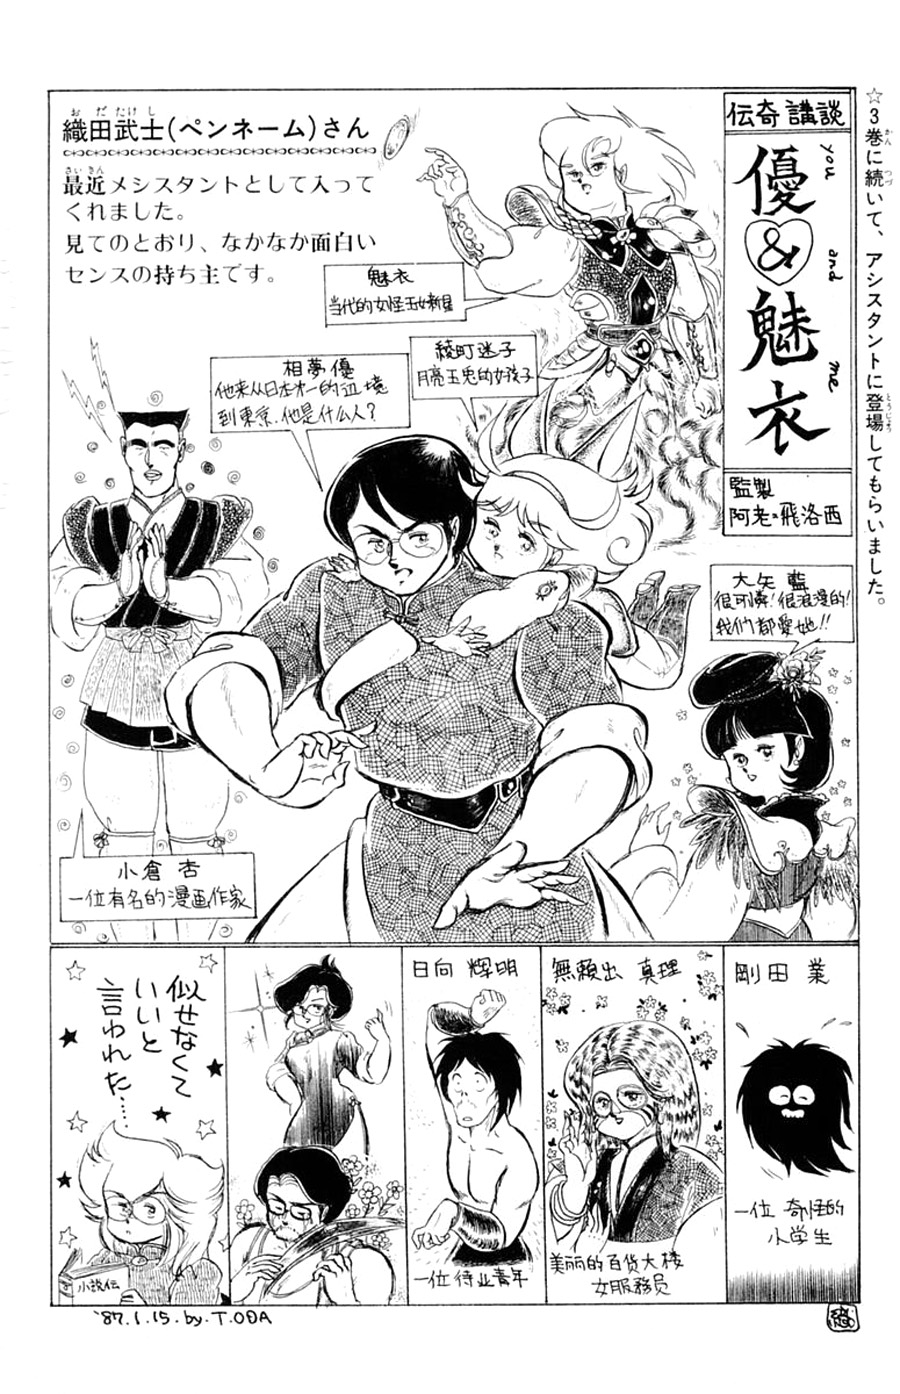 Yuu & Mii Vol. 4 Ch. 19 Yaninari Sou Report